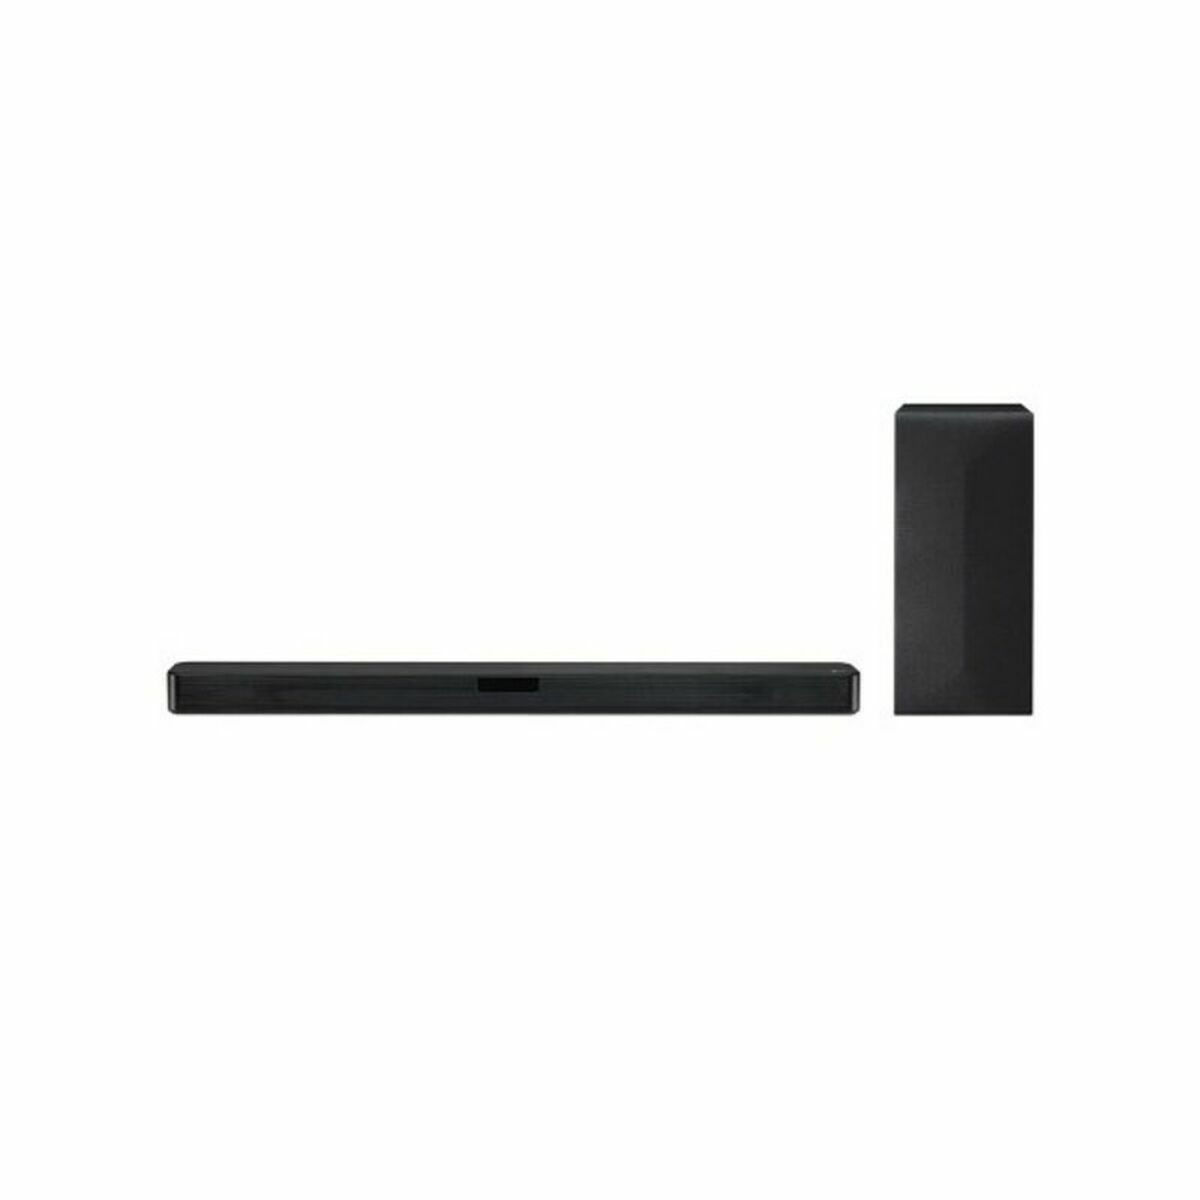 Wireless Sound Bar LG SN4R 420W Black